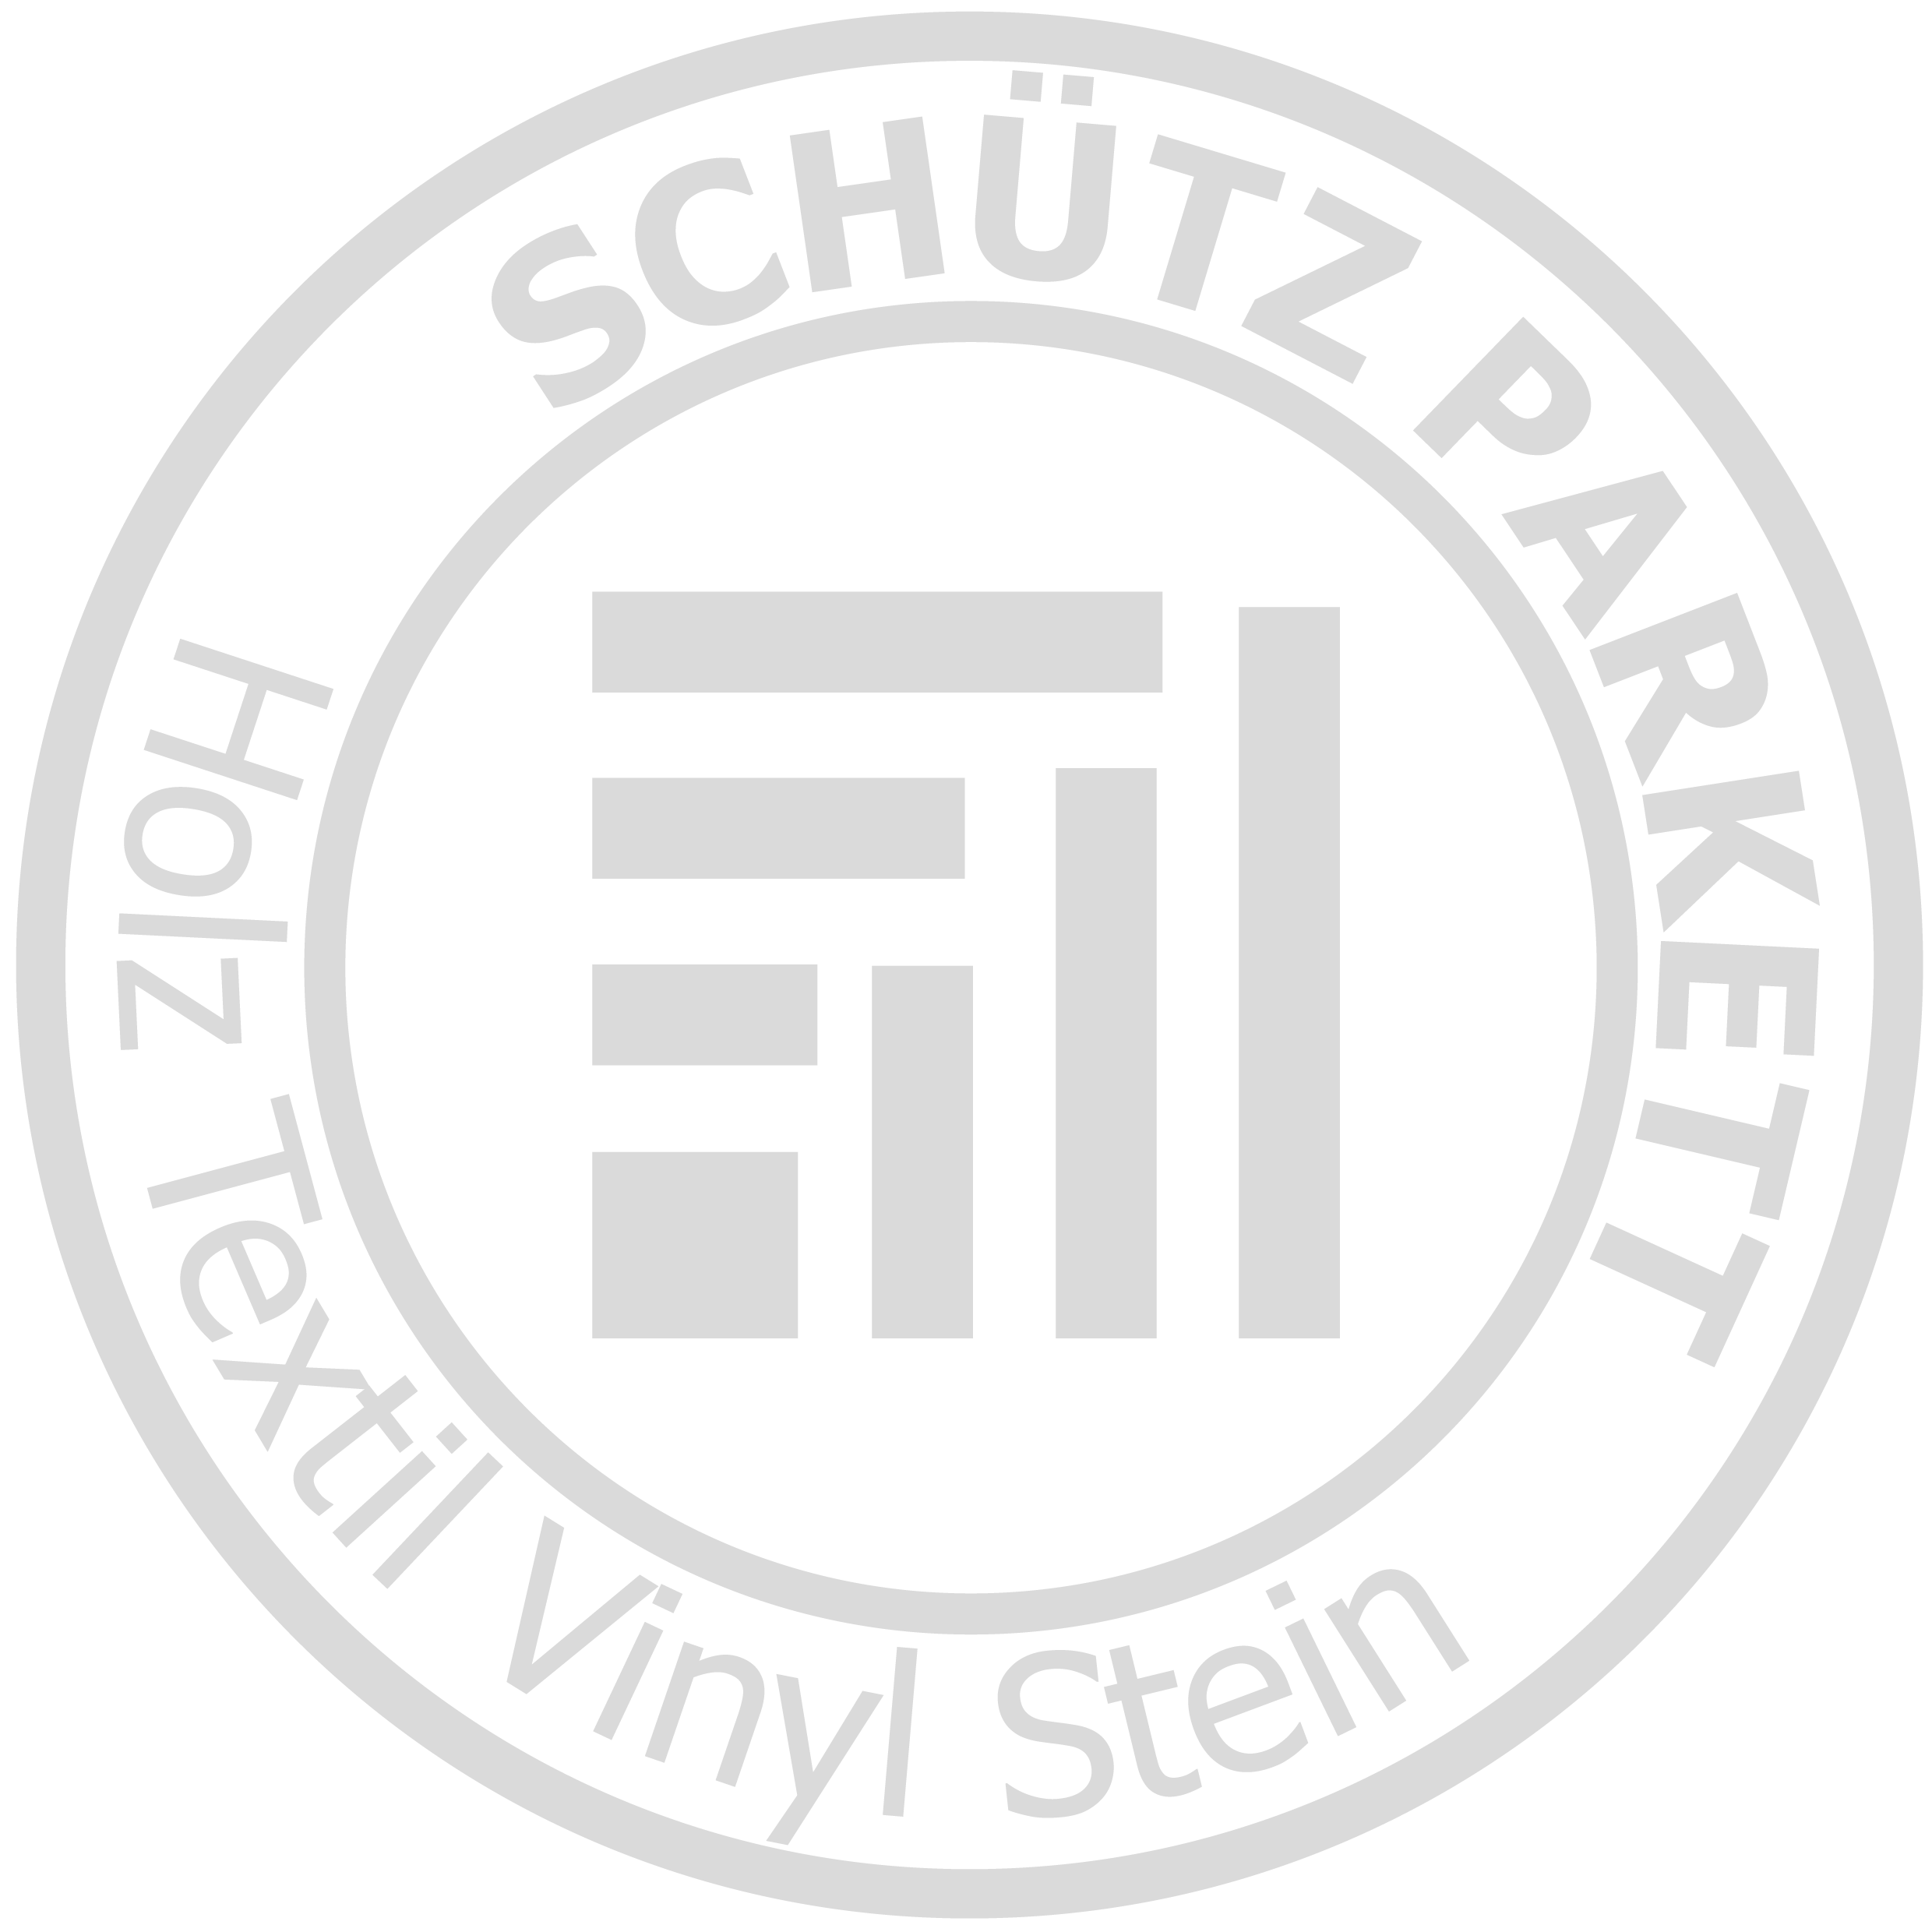 Schütz Parkett Logo grau